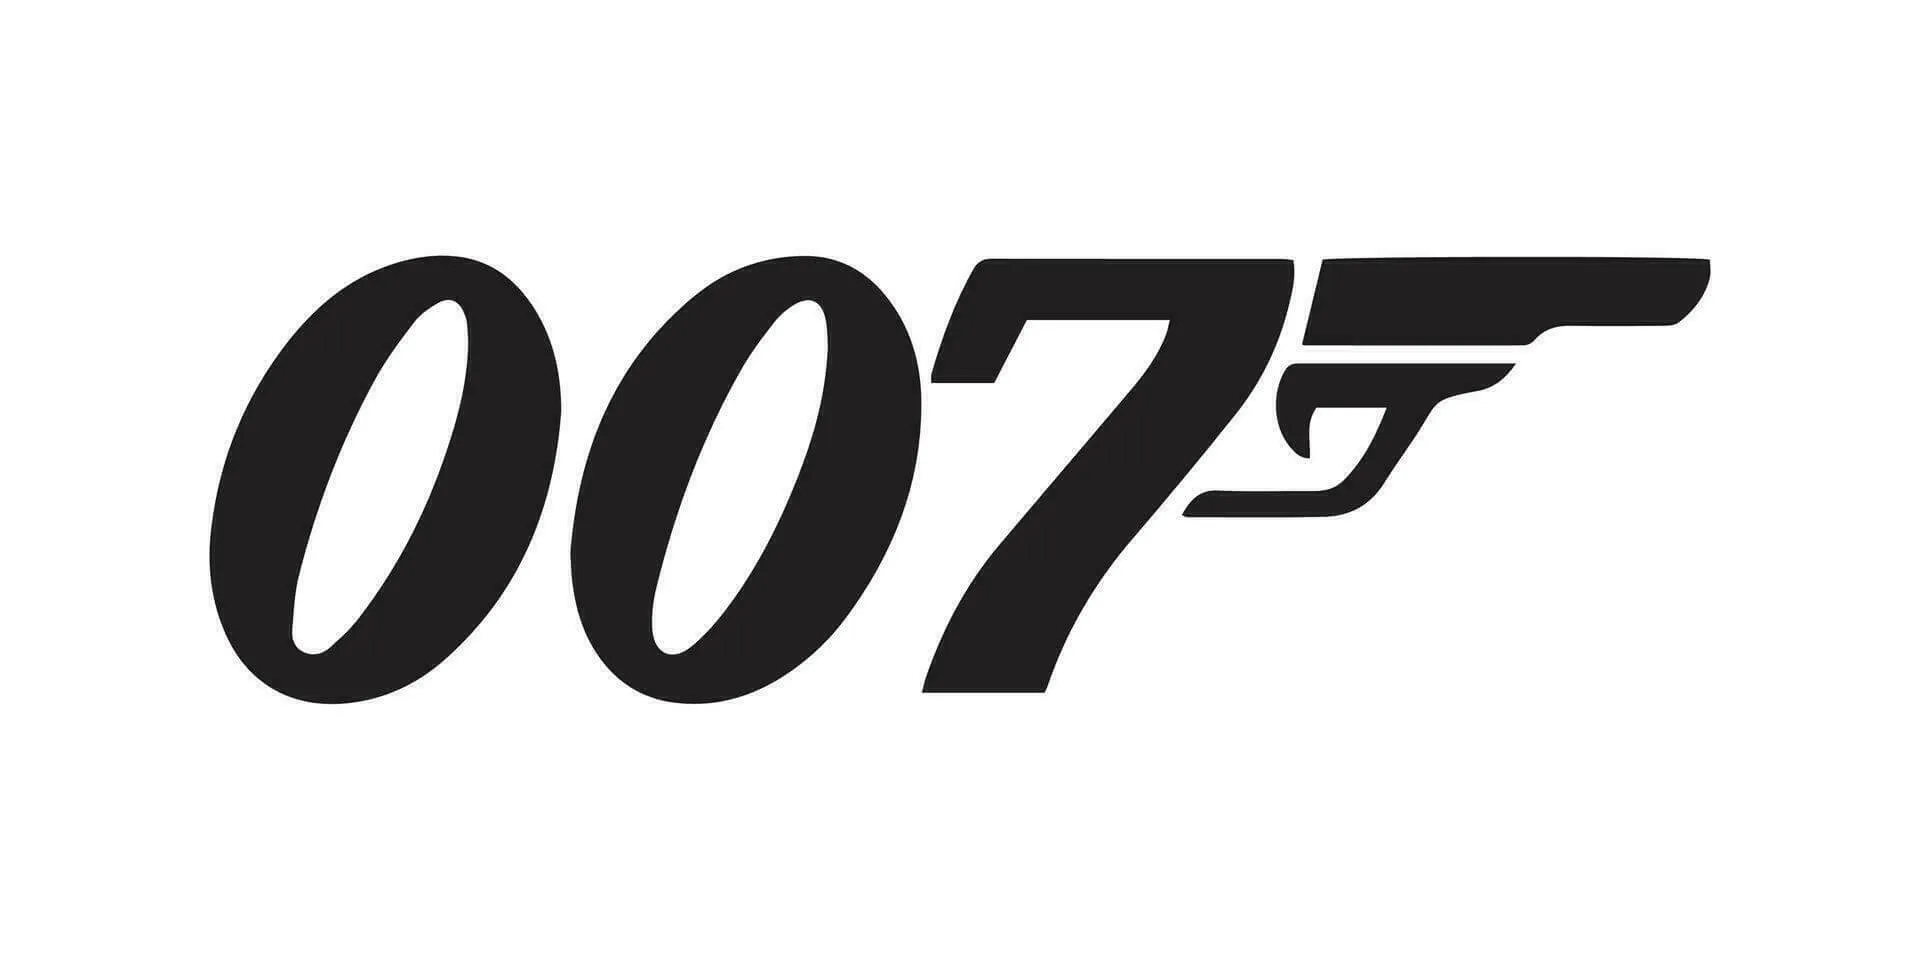 Conheça o possível novo James Bond